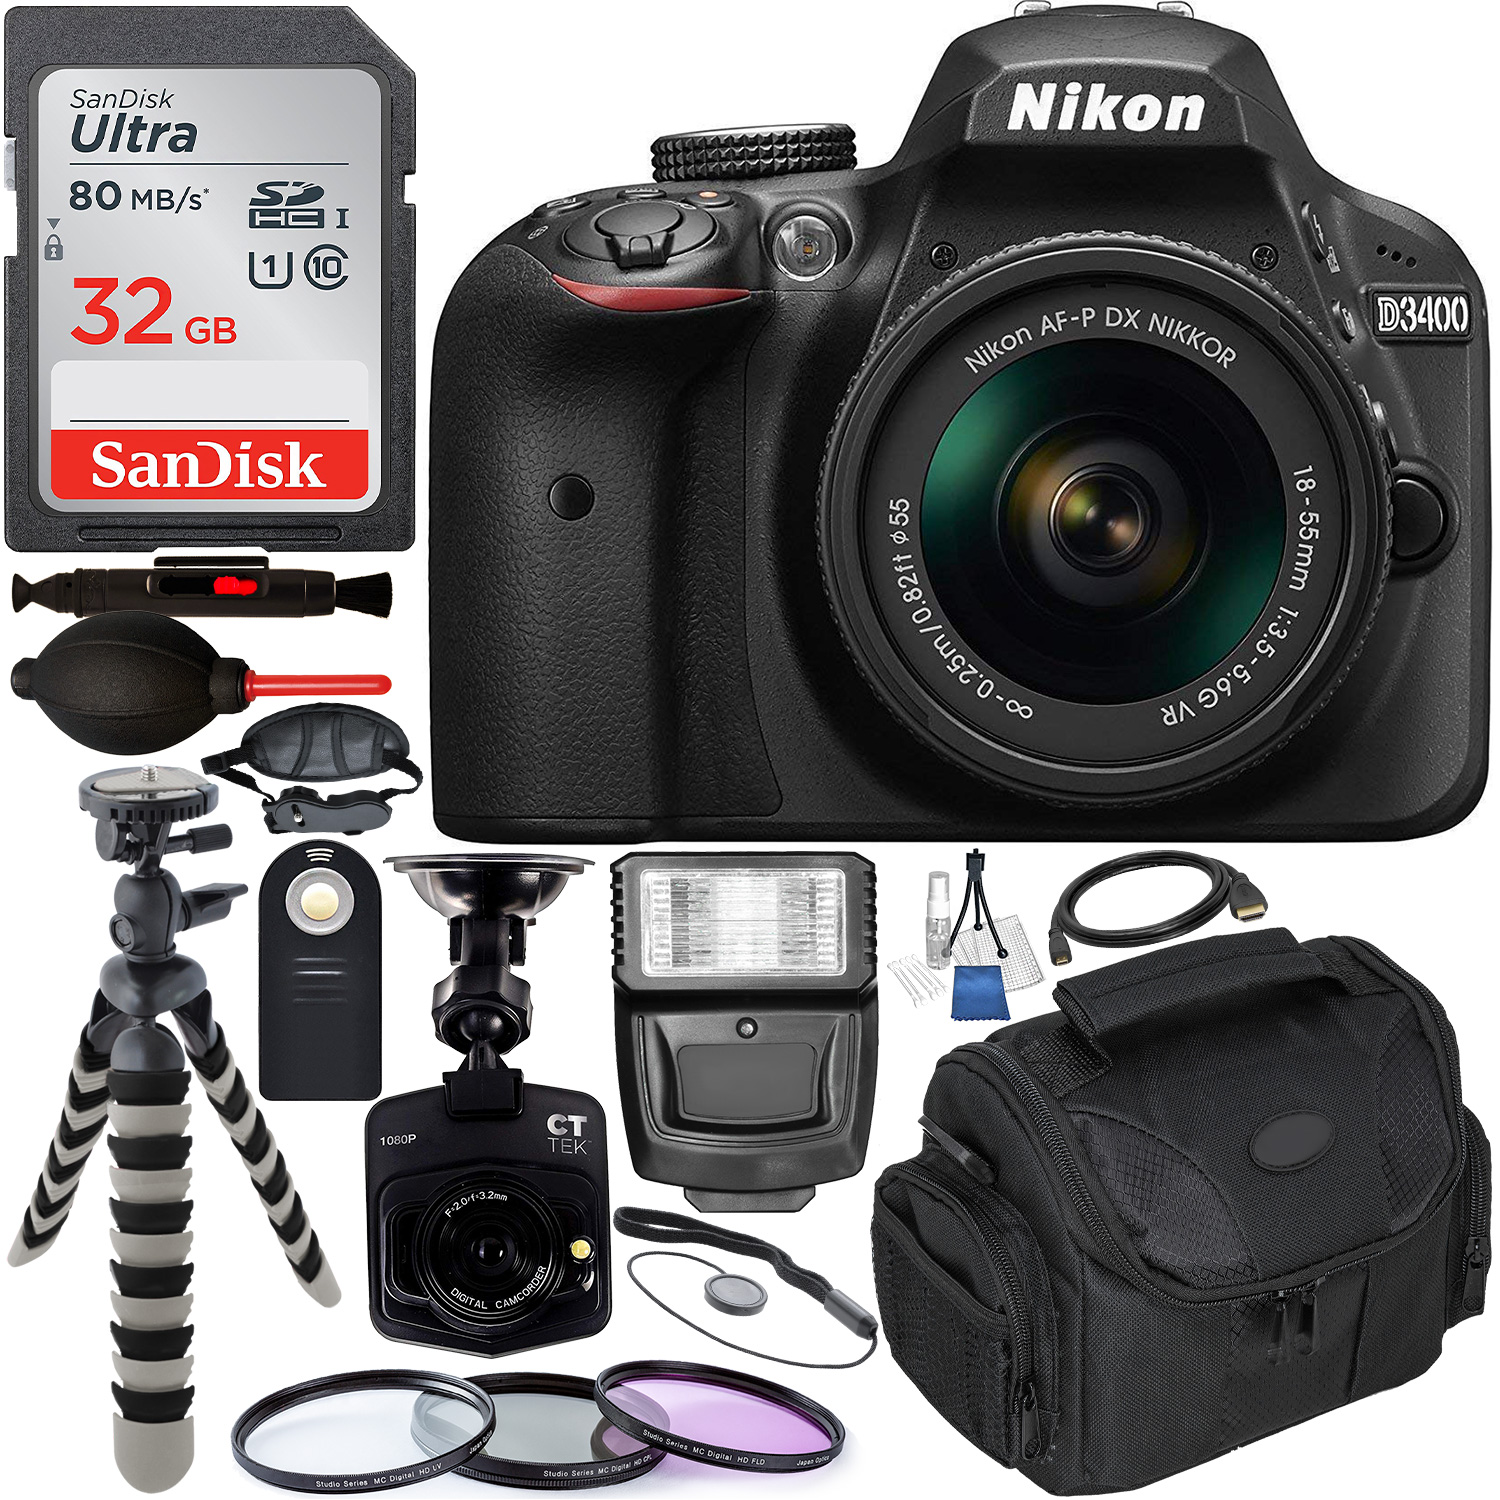 Nikon D3400 DSLR Camera with AF-P 18-55mm Lens Kit (Black) â?? 1587 with Free Promotional Dash Cam